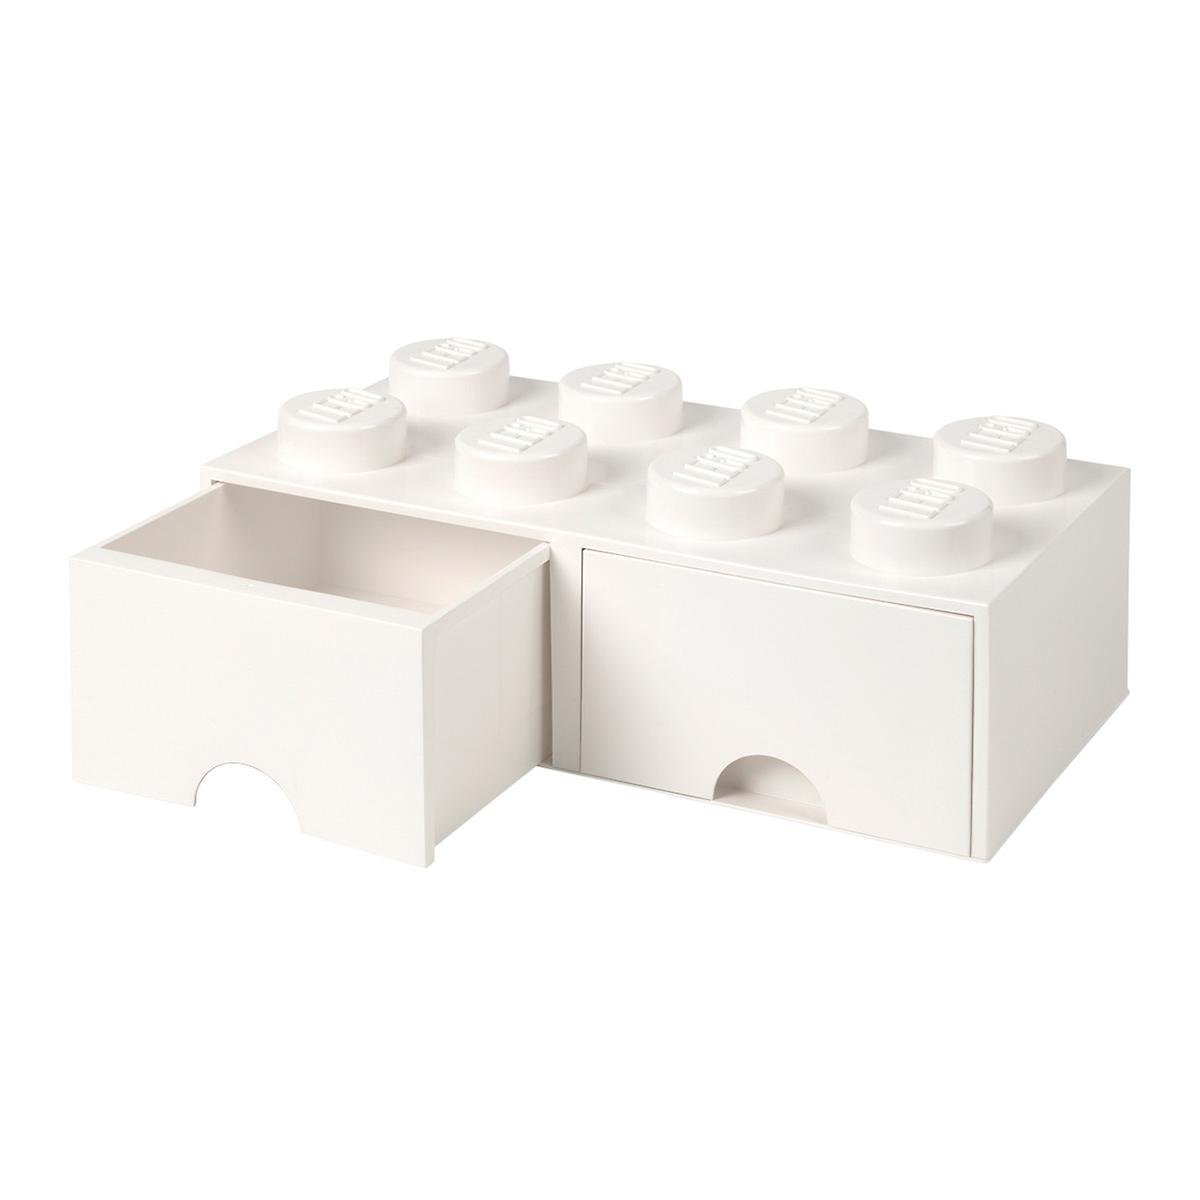 LEGO Storage Drawers